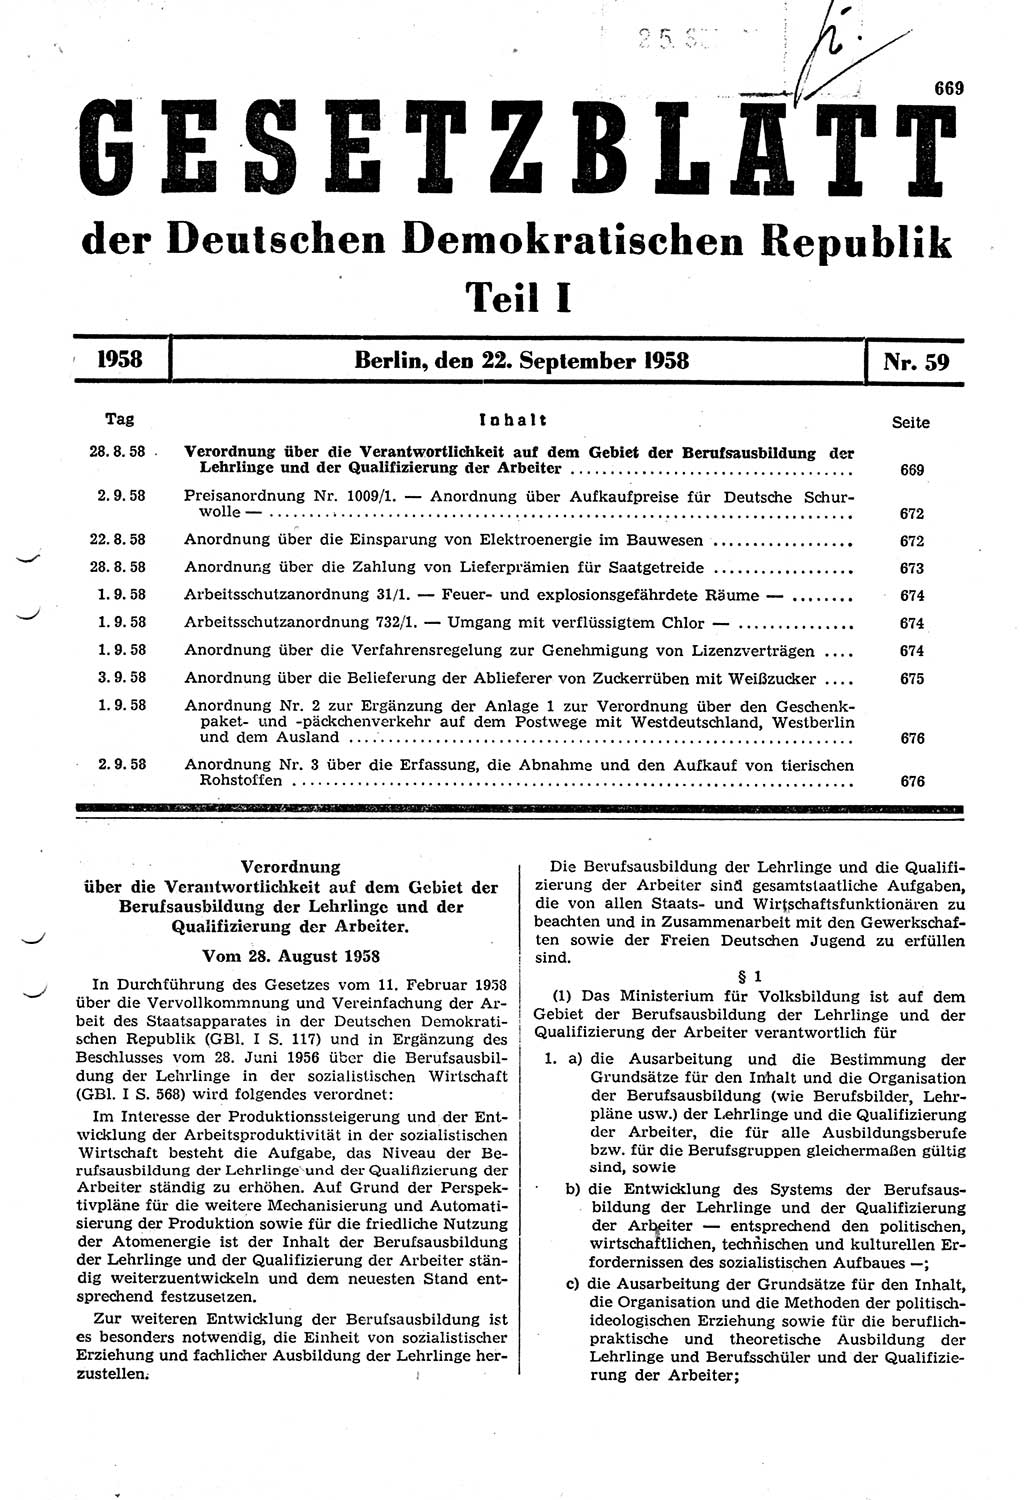 Gesetzblatt (GBl.) der Deutschen Demokratischen Republik (DDR) Teil Ⅰ 1958, Seite 669 (GBl. DDR Ⅰ 1958, S. 669)